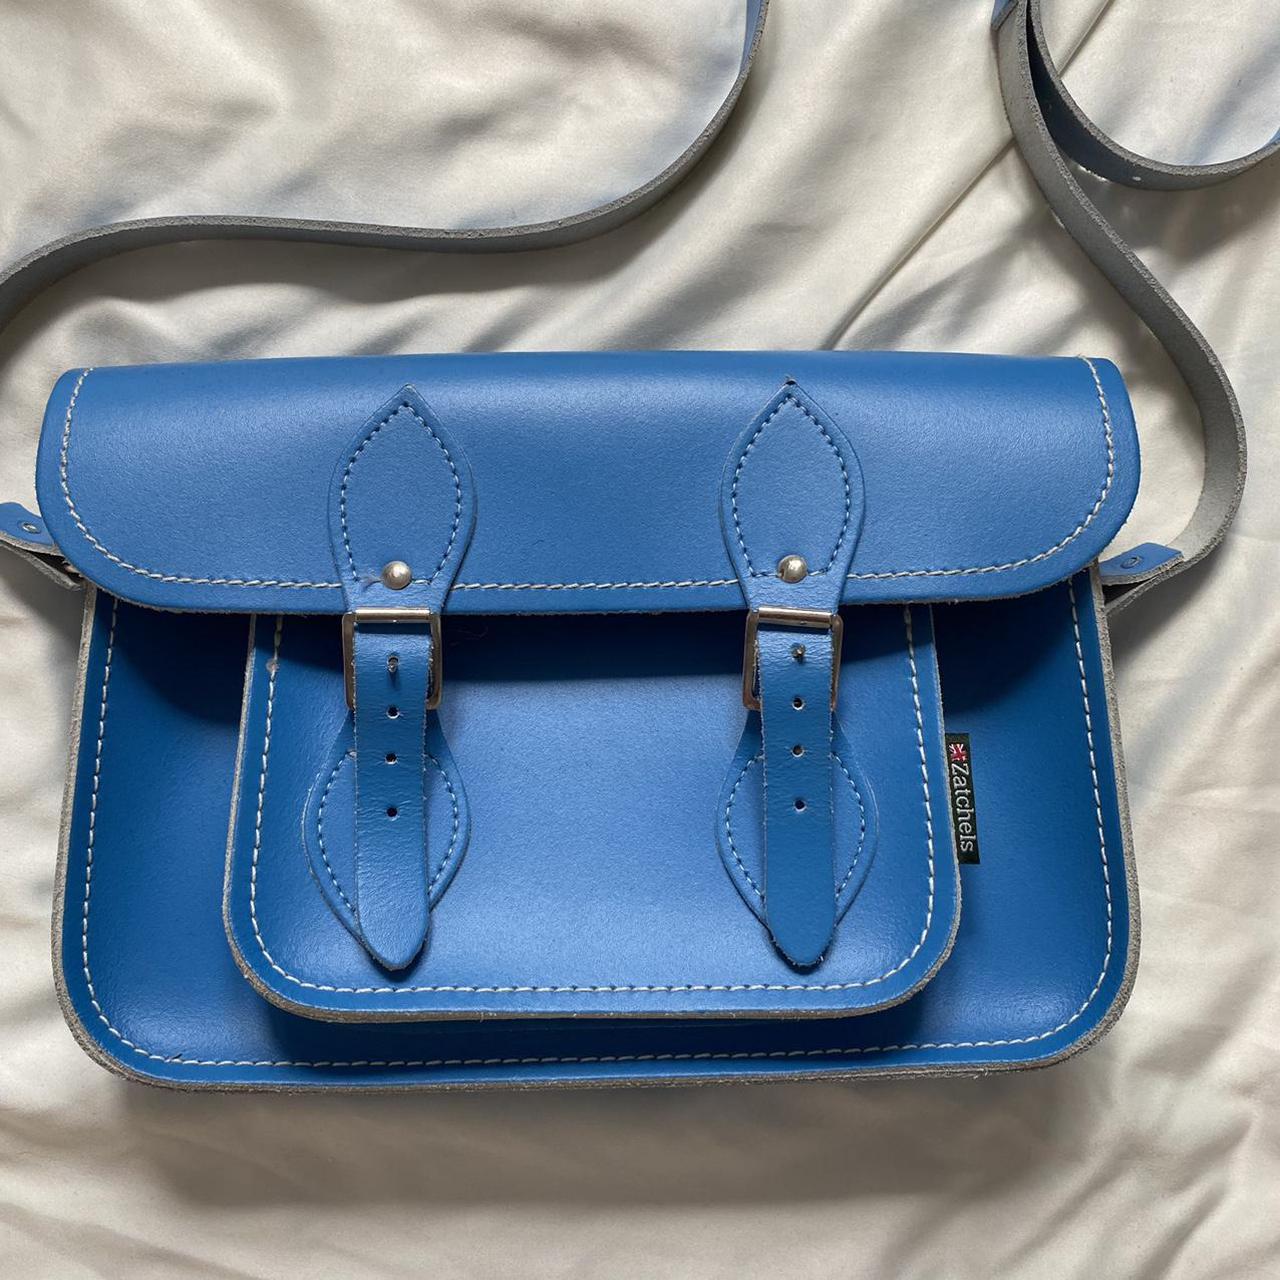 Blue satchel leather bag 11.5” - adjustable... - Depop